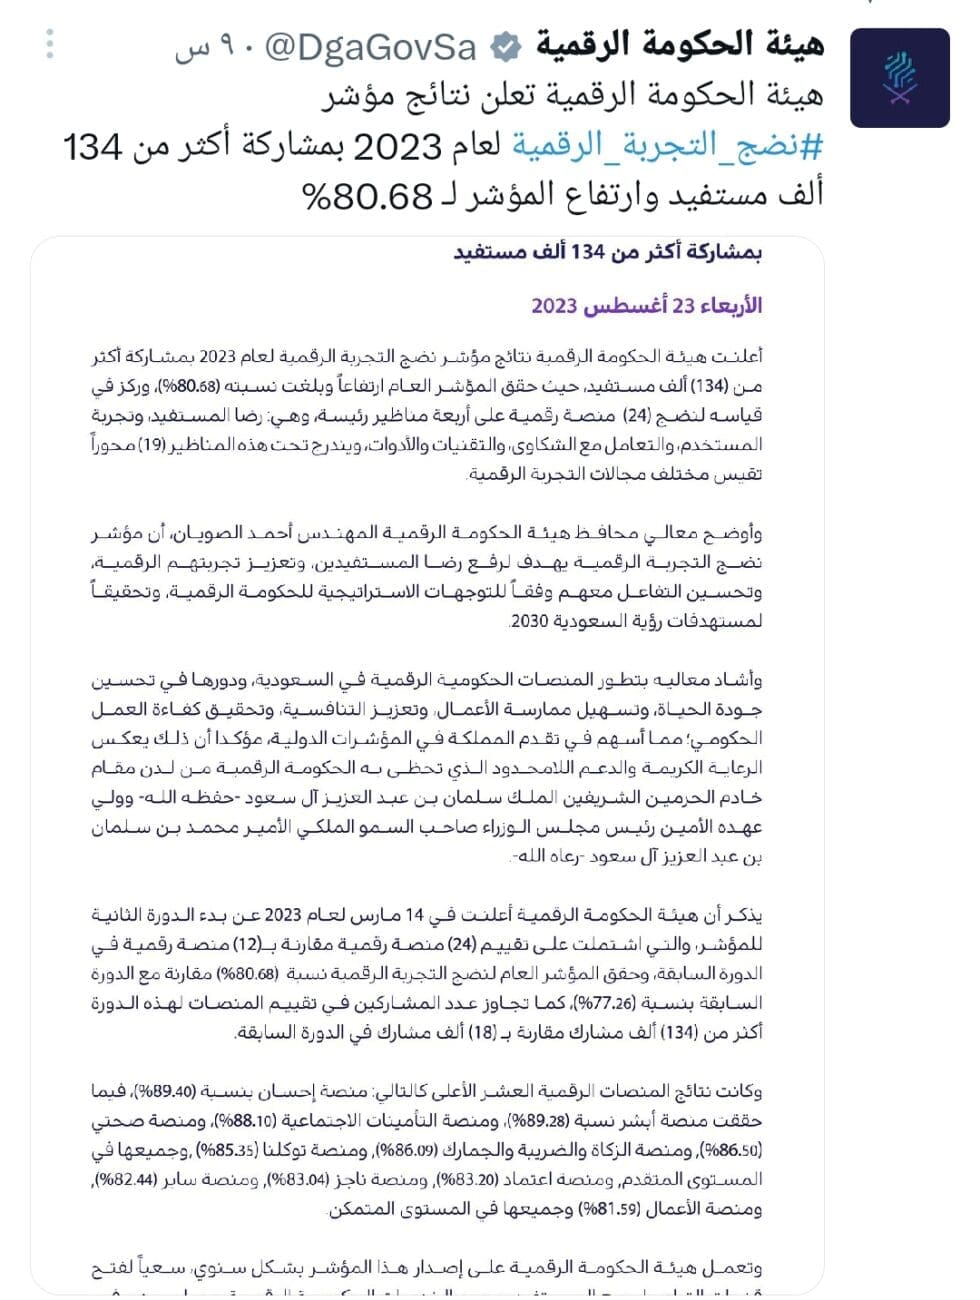 «الحكومة الرقمية السعودية» تعلن نتائج مؤشر نضج التجربة الرقمية لعام 2023